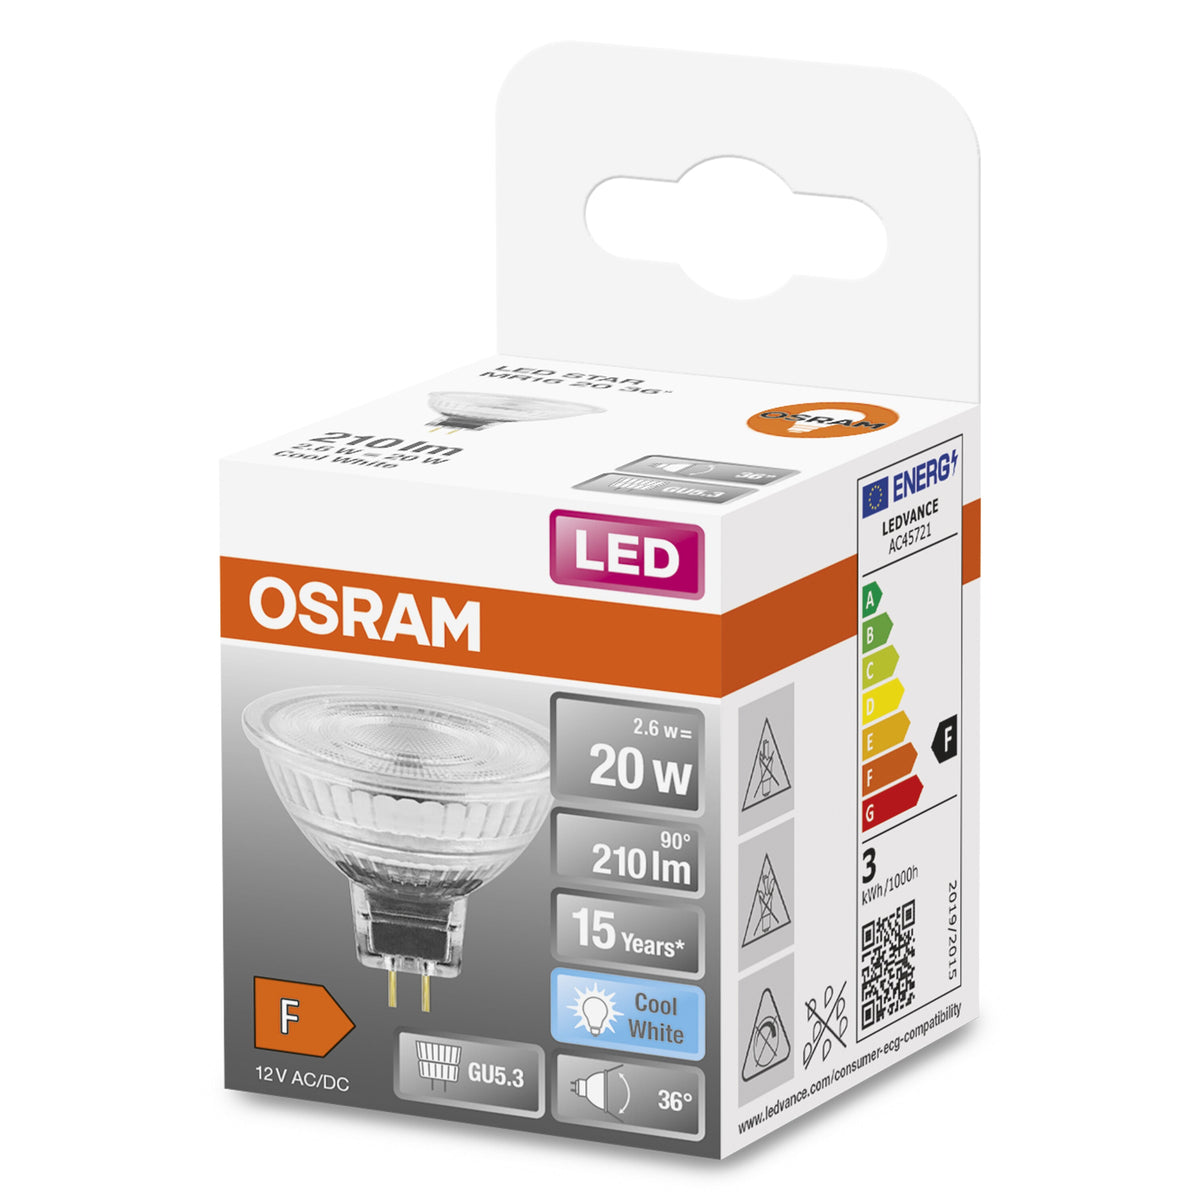 Lampada con riflettore LED OSRAM MR16 con attacco GU5.3, bianco freddo (4000K), spot in vetro, 2,6 W, ricambio per lampada con riflettore da 20 W, LED STAR MR16 12 V